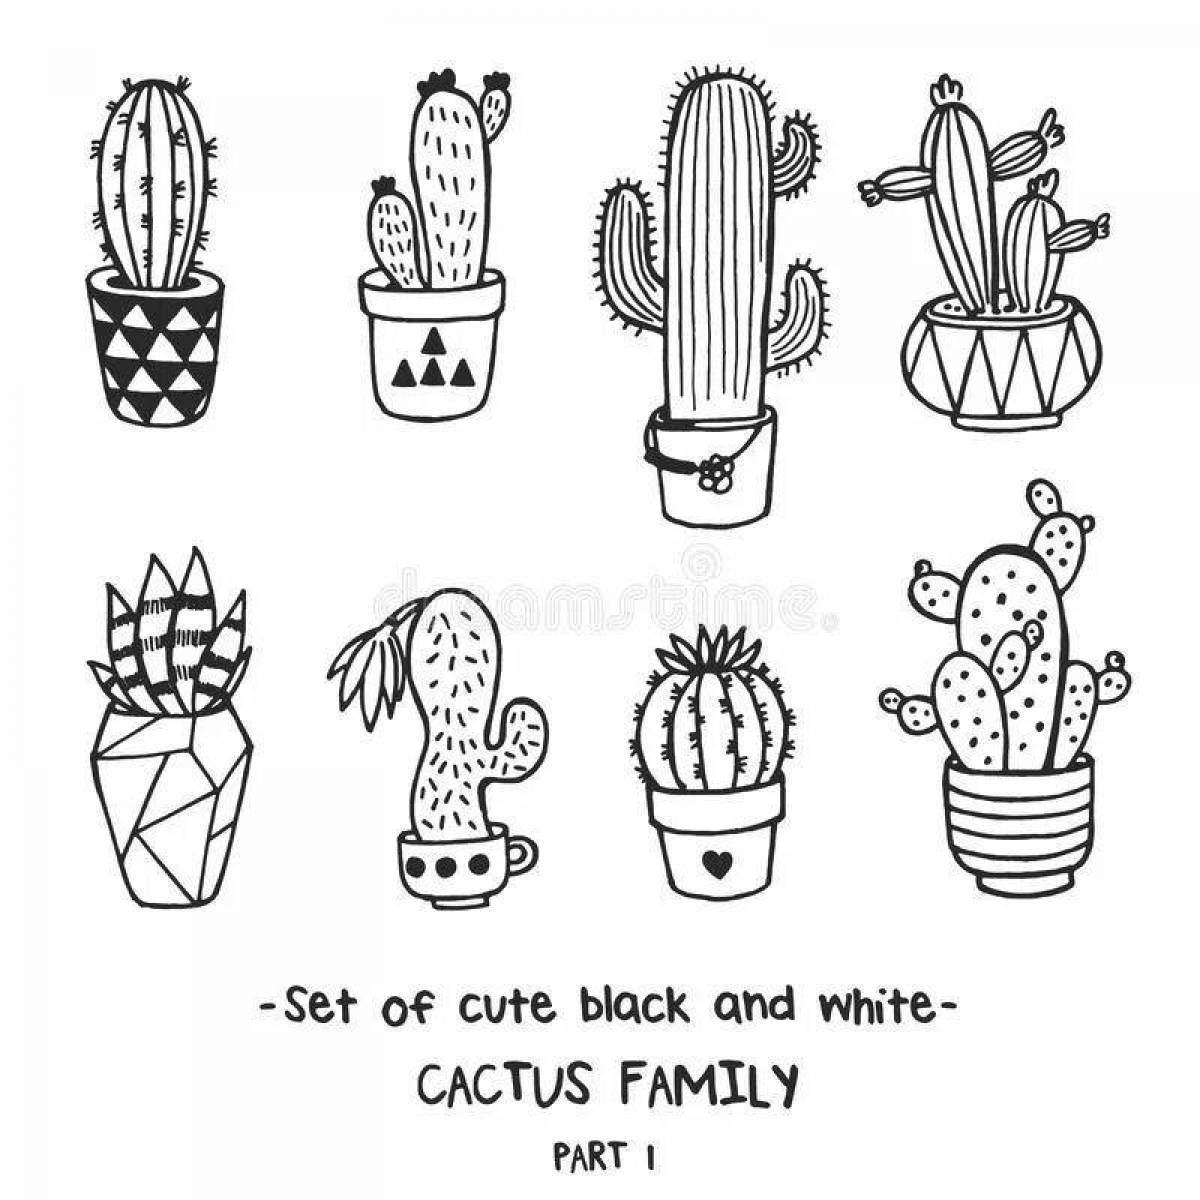 Adorable cactus coloring book